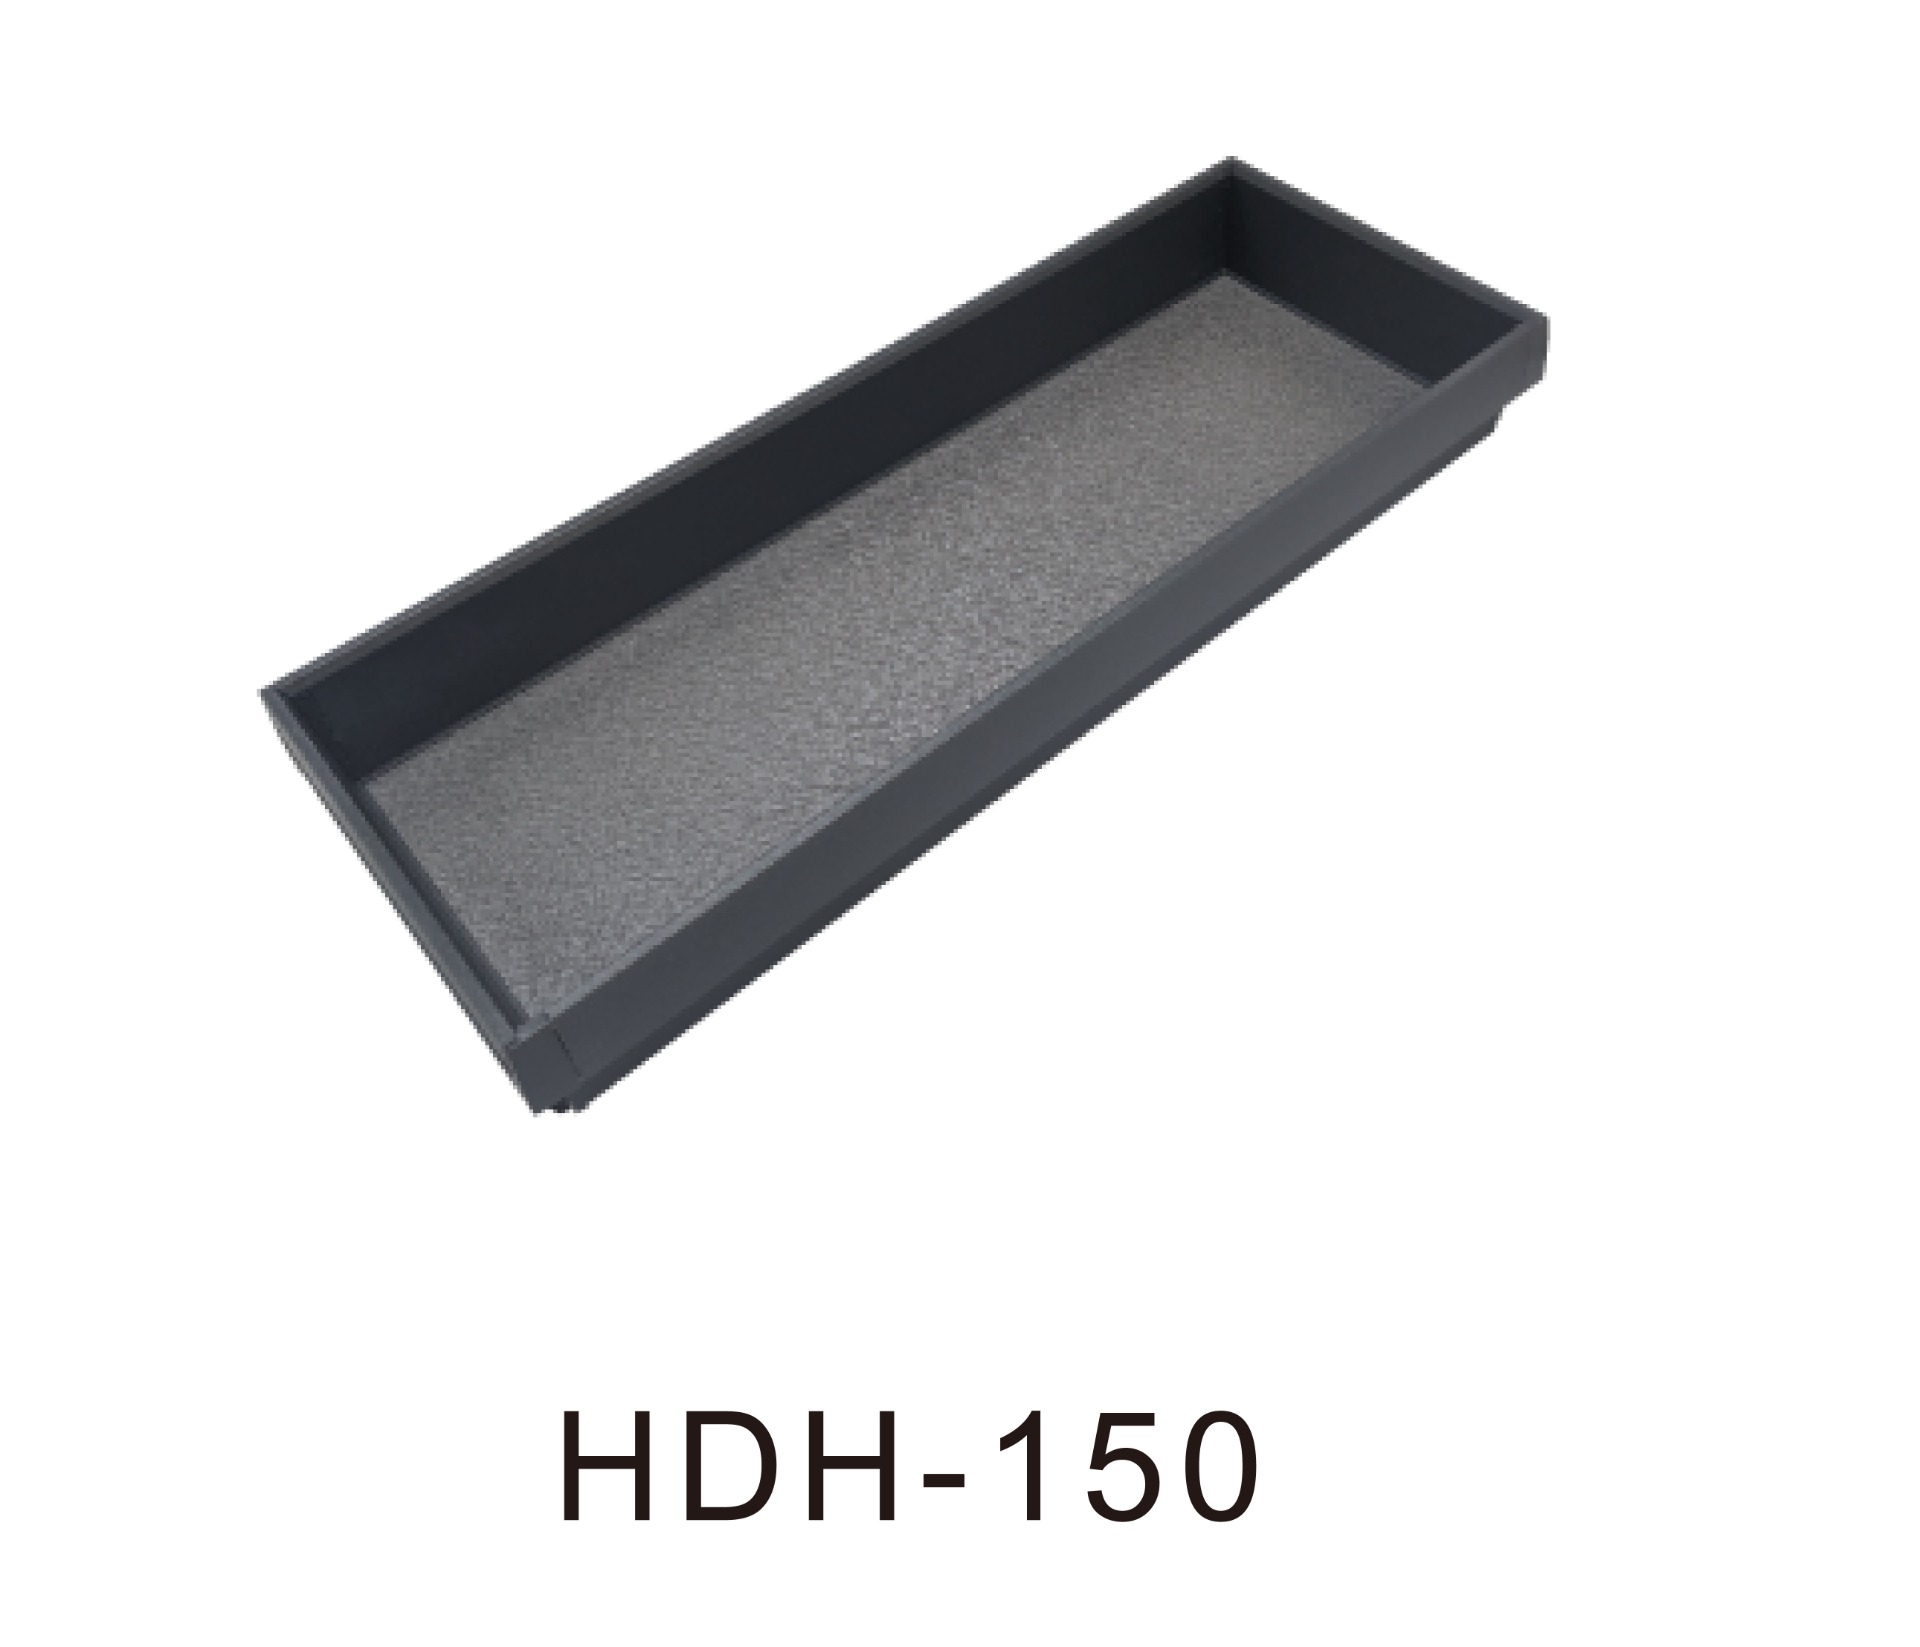 HDH-150